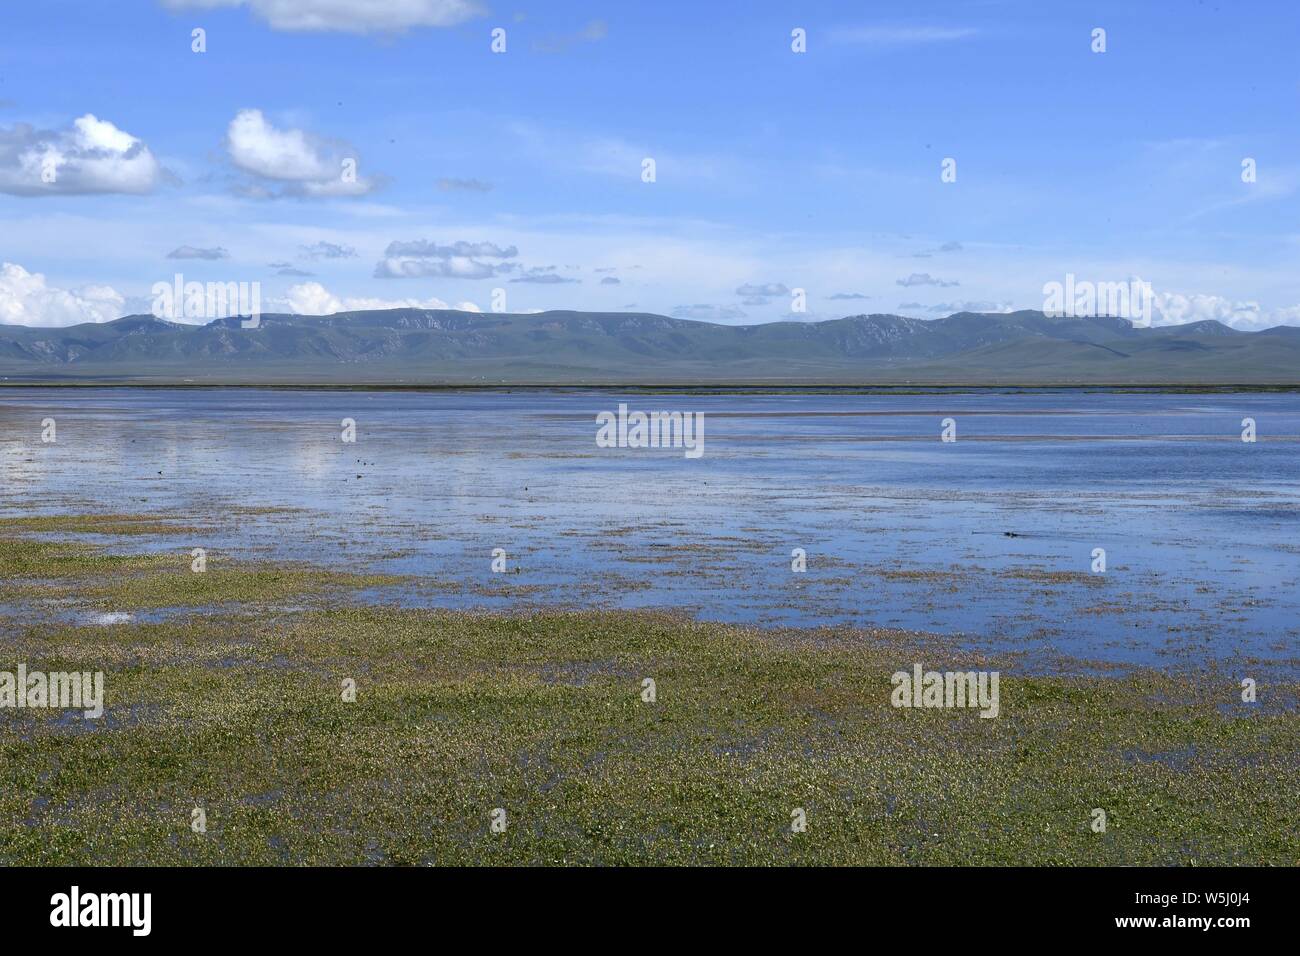 Luqu. 29 Luglio, 2019. Foto scattata a luglio 29, 2019 mostra una vista del lago Gahai di Luqu County in tibetano prefettura autonoma di Gannan, a nord-ovest della Cina di Provincia di Gansu. La zona del Lago Gahai, noto come una grande zona umida al Plateau Qinghai-Tibet nonché uno dei principali sorgenti del fiume giallo, è stata l'espansione e ha raggiunto i 2.700 ettari a causa di piogge abbondanti e il miglioramento del suo ambiente ecologico negli ultimi anni. Credito: Ma Ning/Xinhua/Alamy Live News Foto Stock